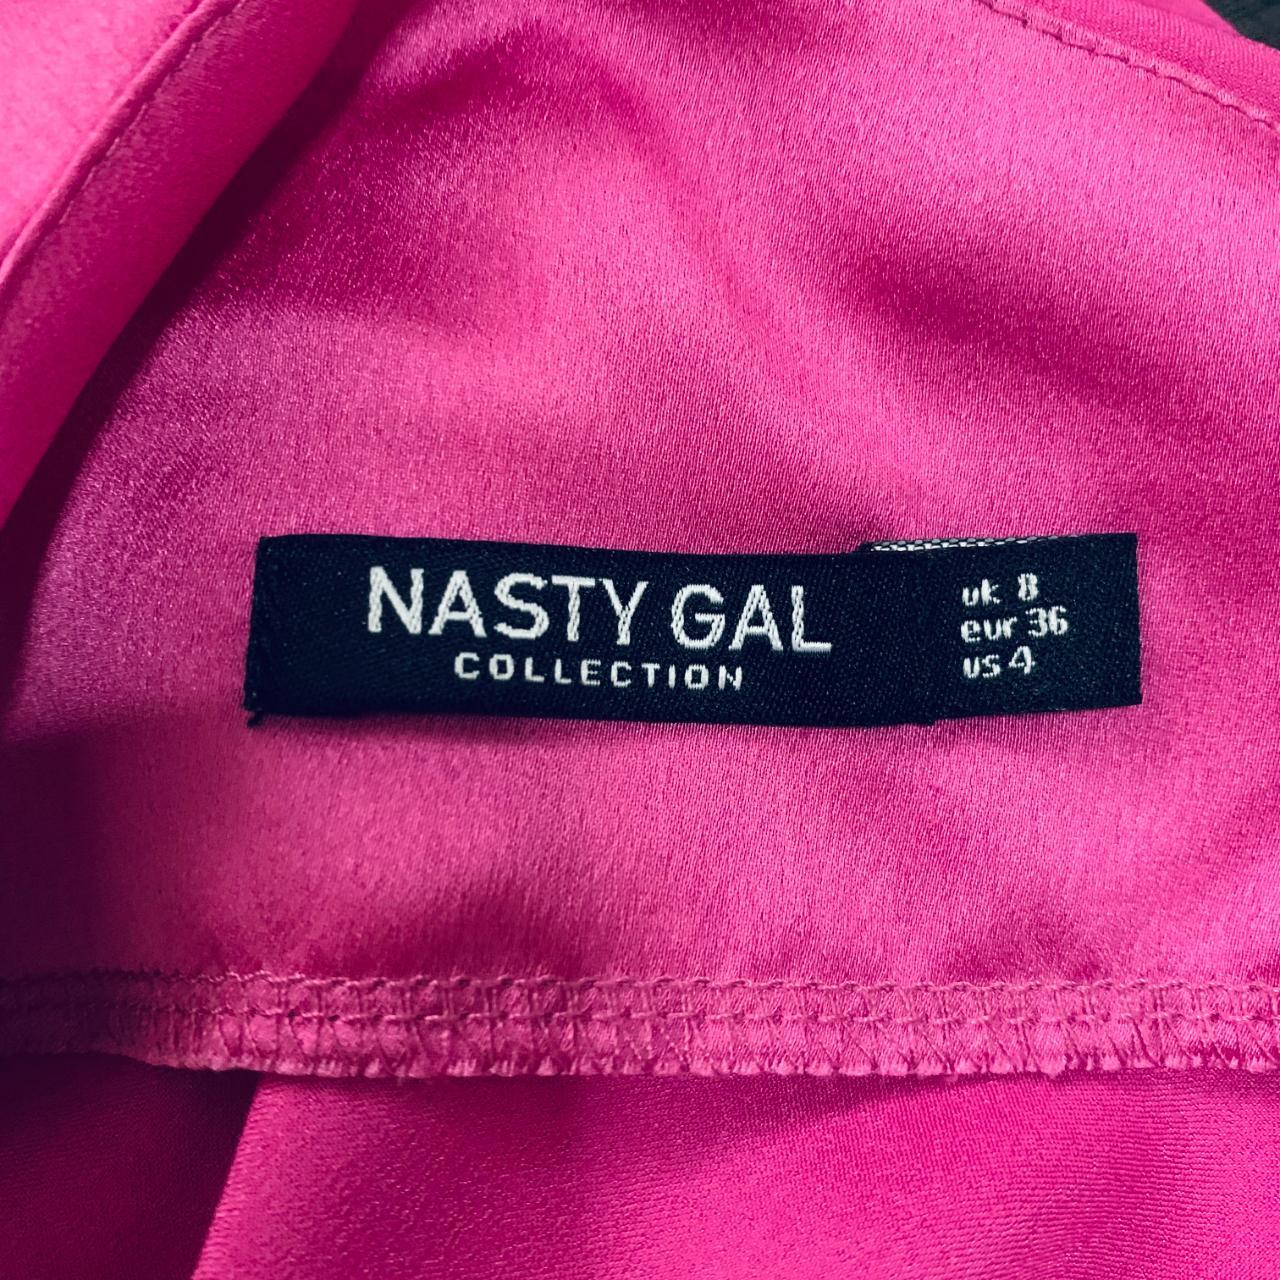 Nasty Gal Barbie Pink One-Shoulder Satin Dress Shirt... - Depop